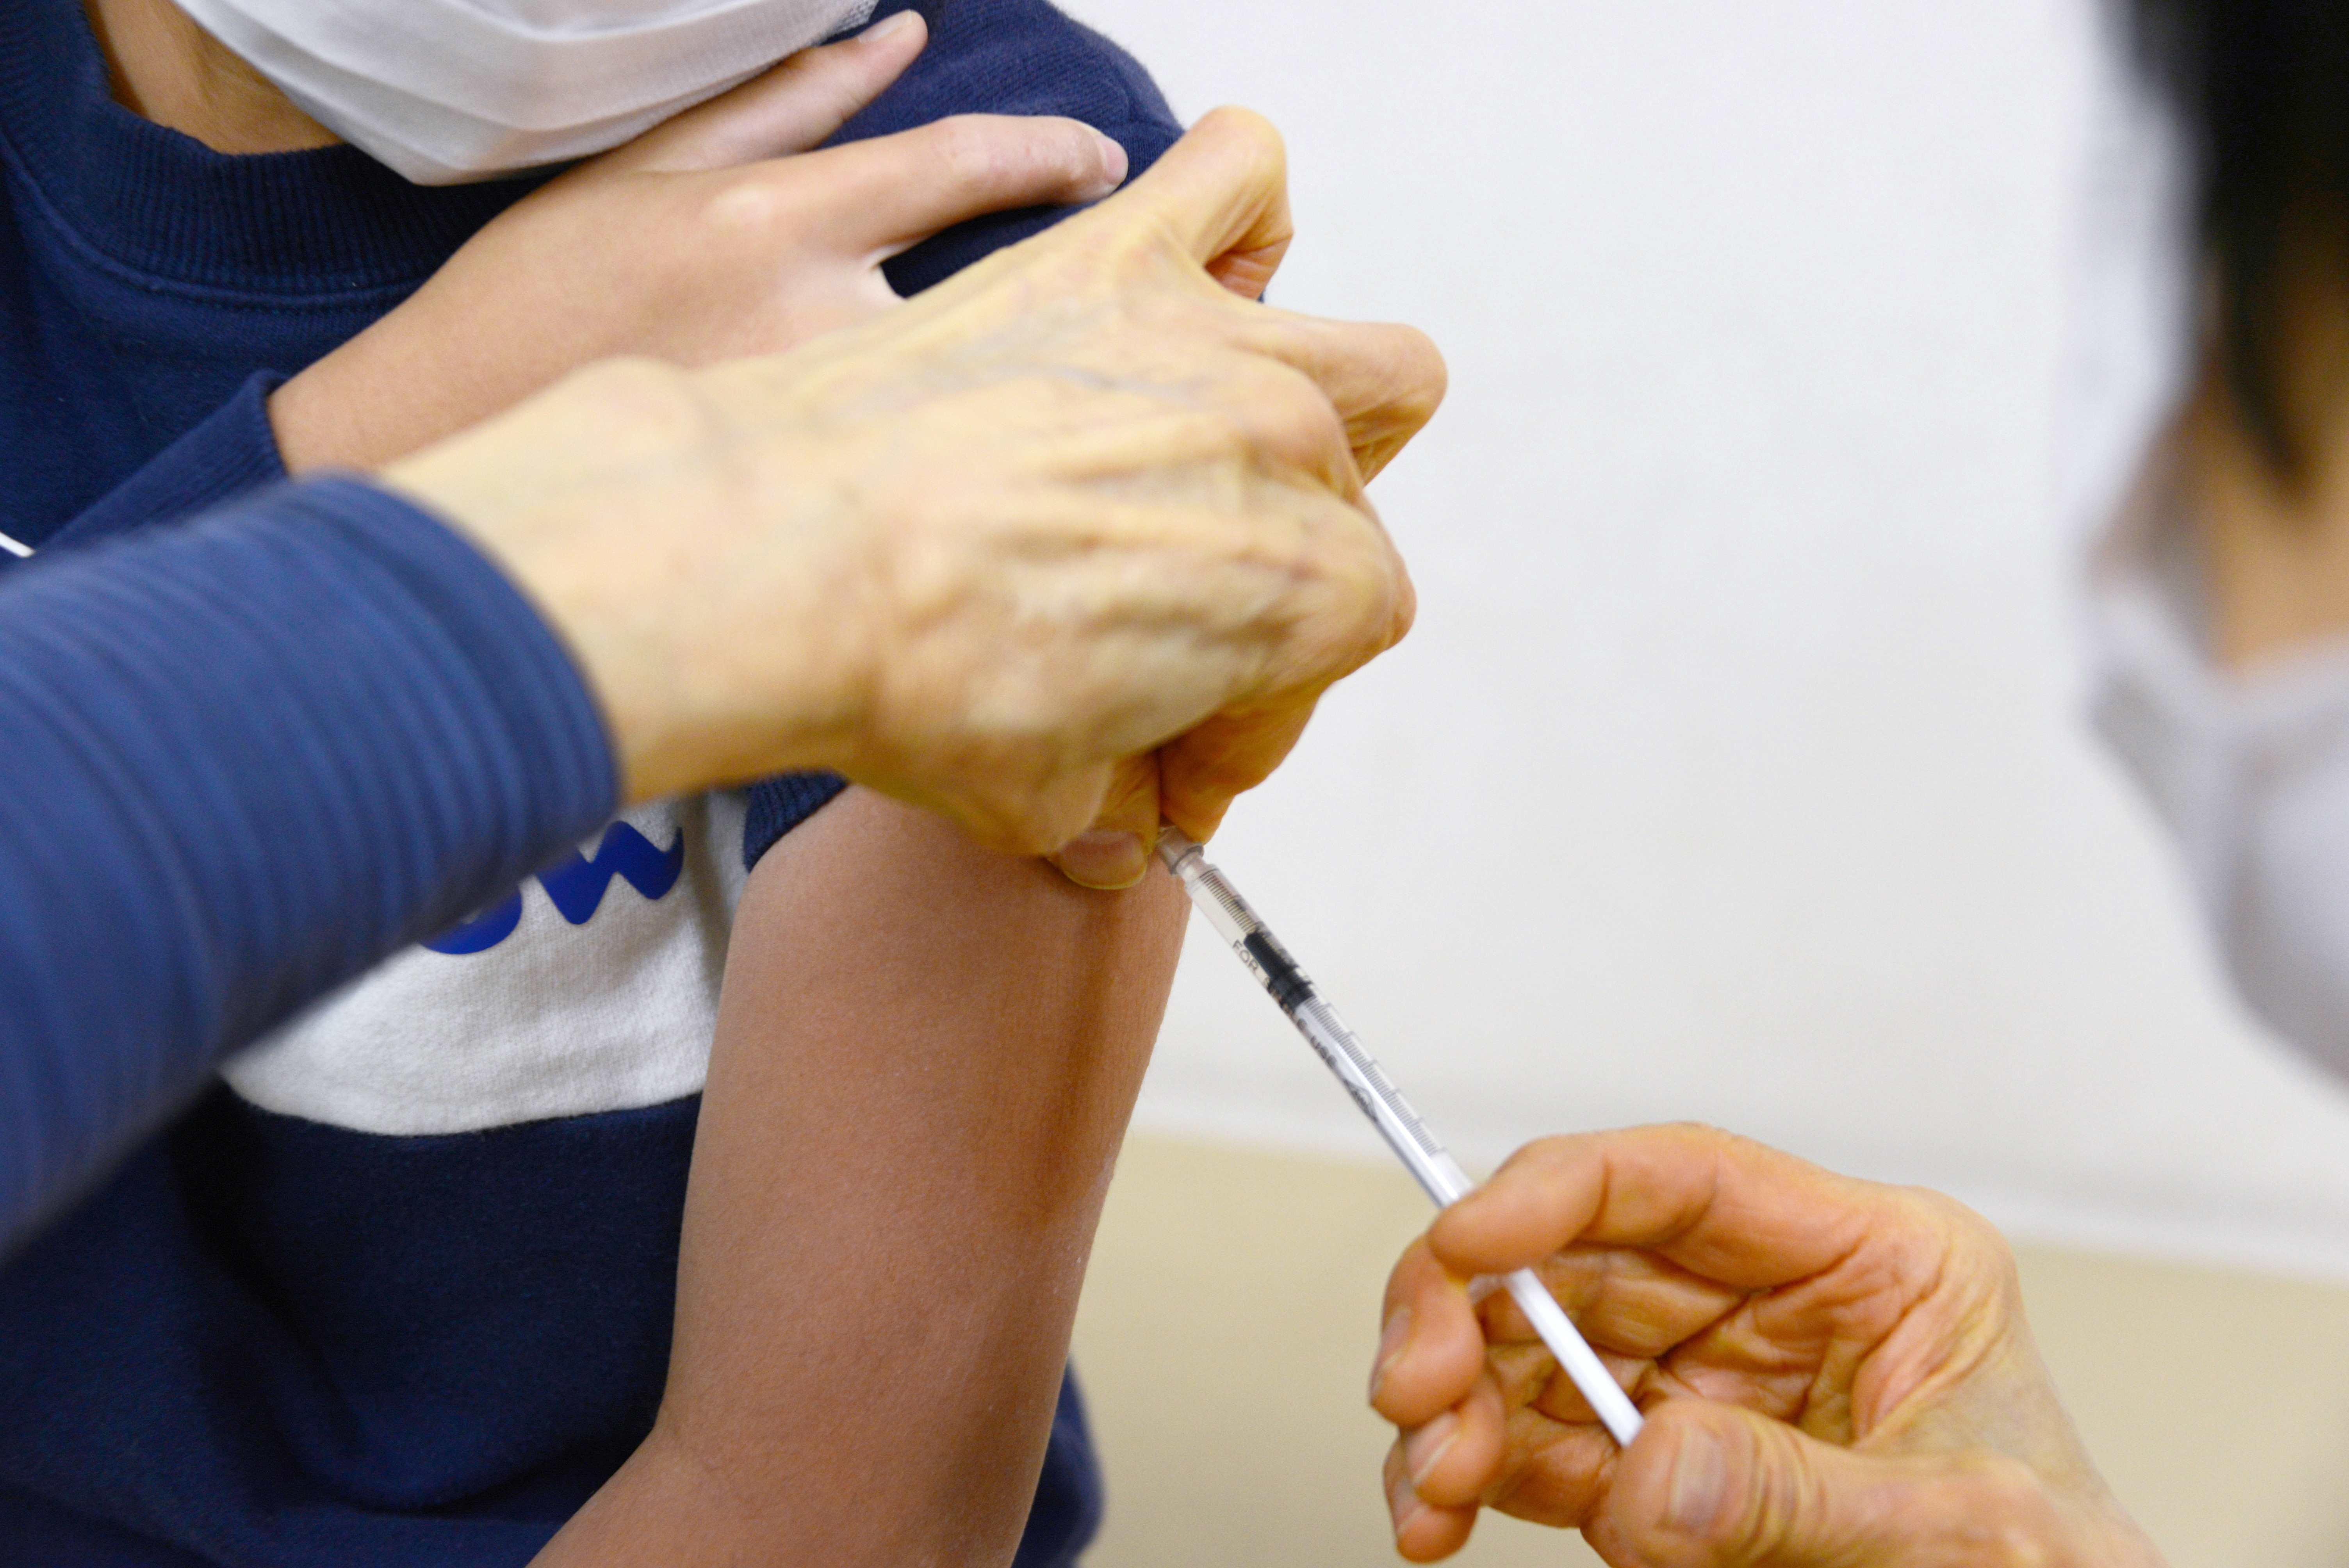 インフルエンザの予防接種を受ける小学生